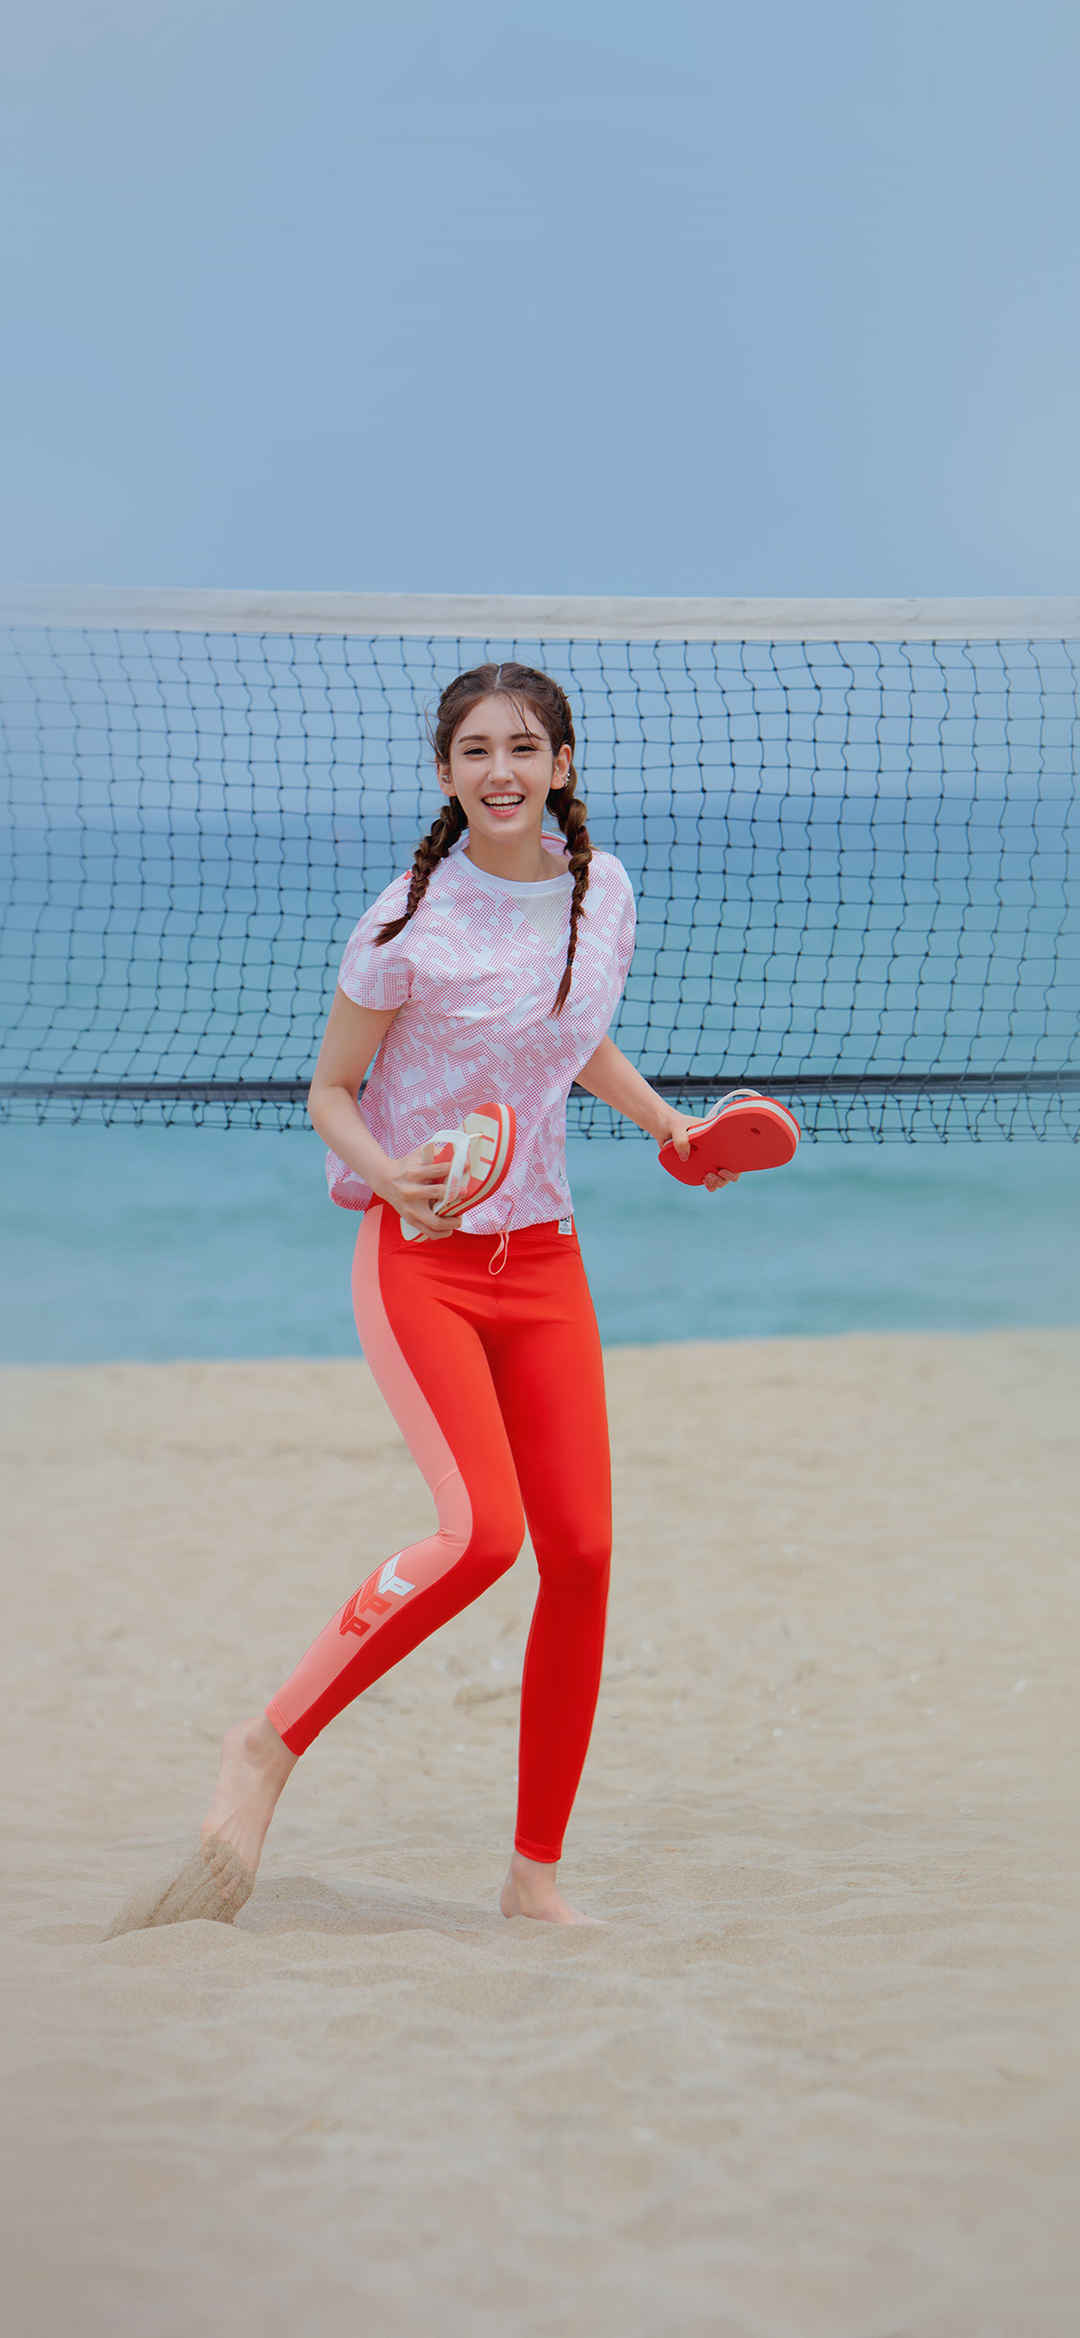 沙滩上穿红色运动裤开心玩沙滩排球的美女高清手机壁纸-